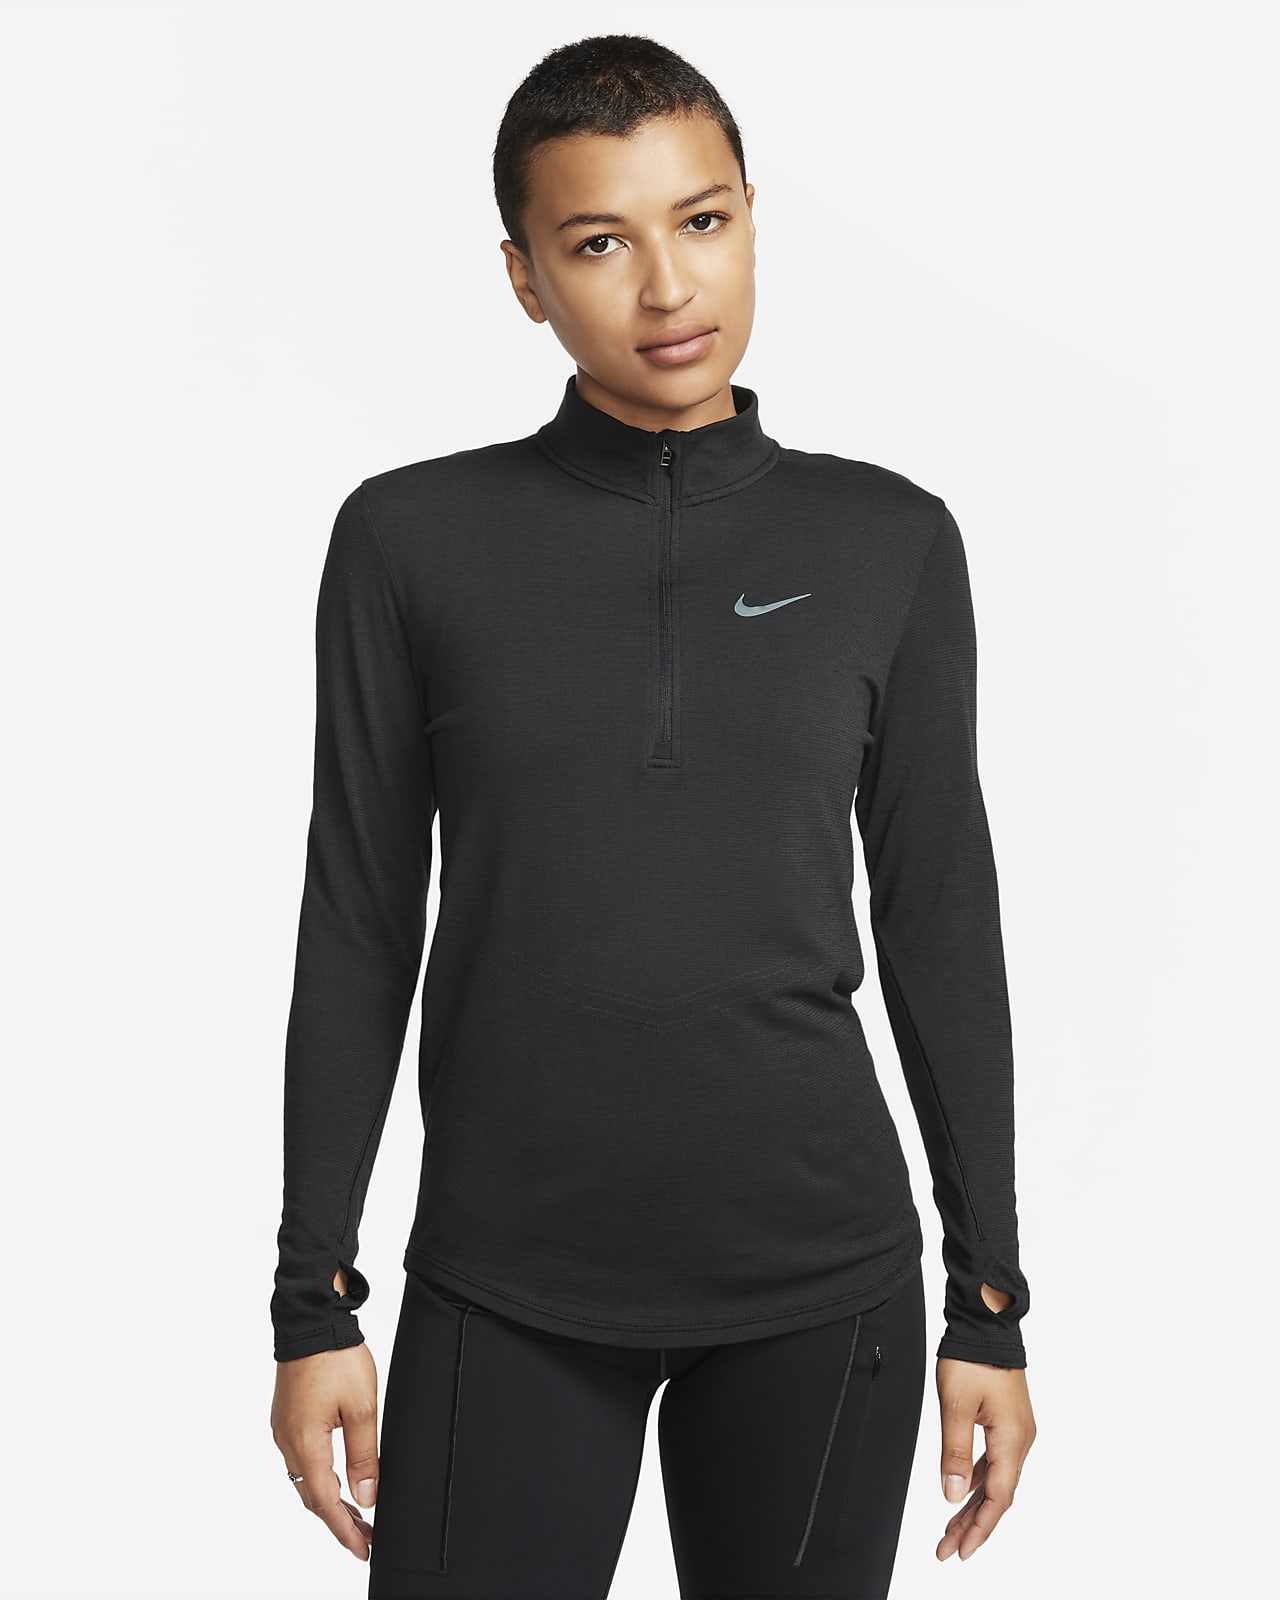 Nike Dri-FIT Swift hosszú ujjú, gyapjú női futófelső